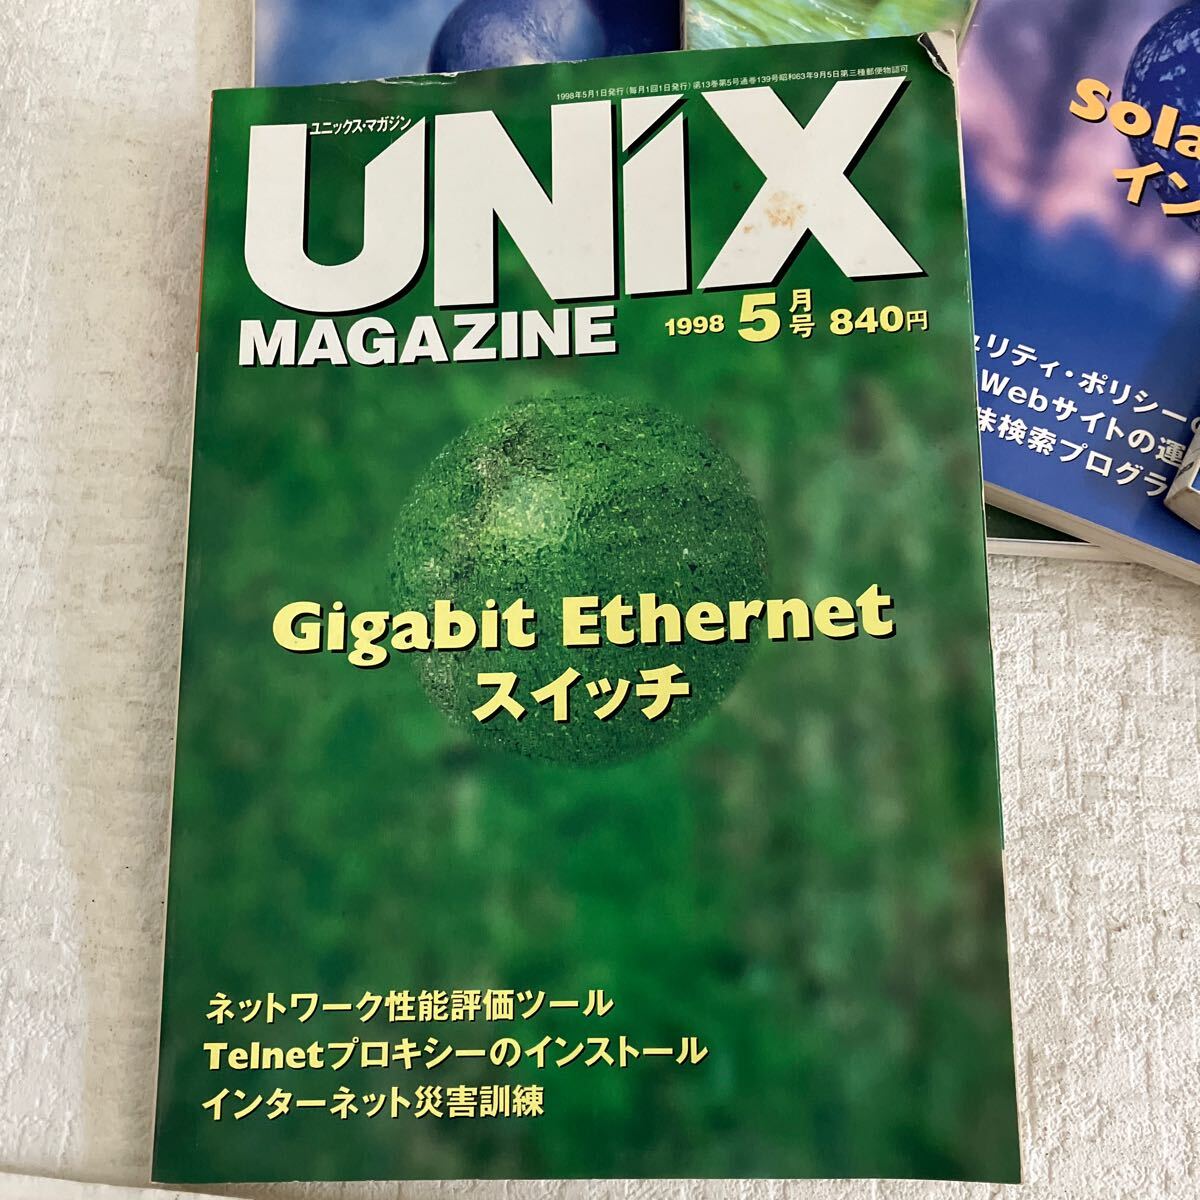 e338/16-80 技術情報誌 雑誌 ユニックスマガジン UNiX MAGAZINE 1998 まとめて 7冊 アスキー プログラミング java 当時物_画像4